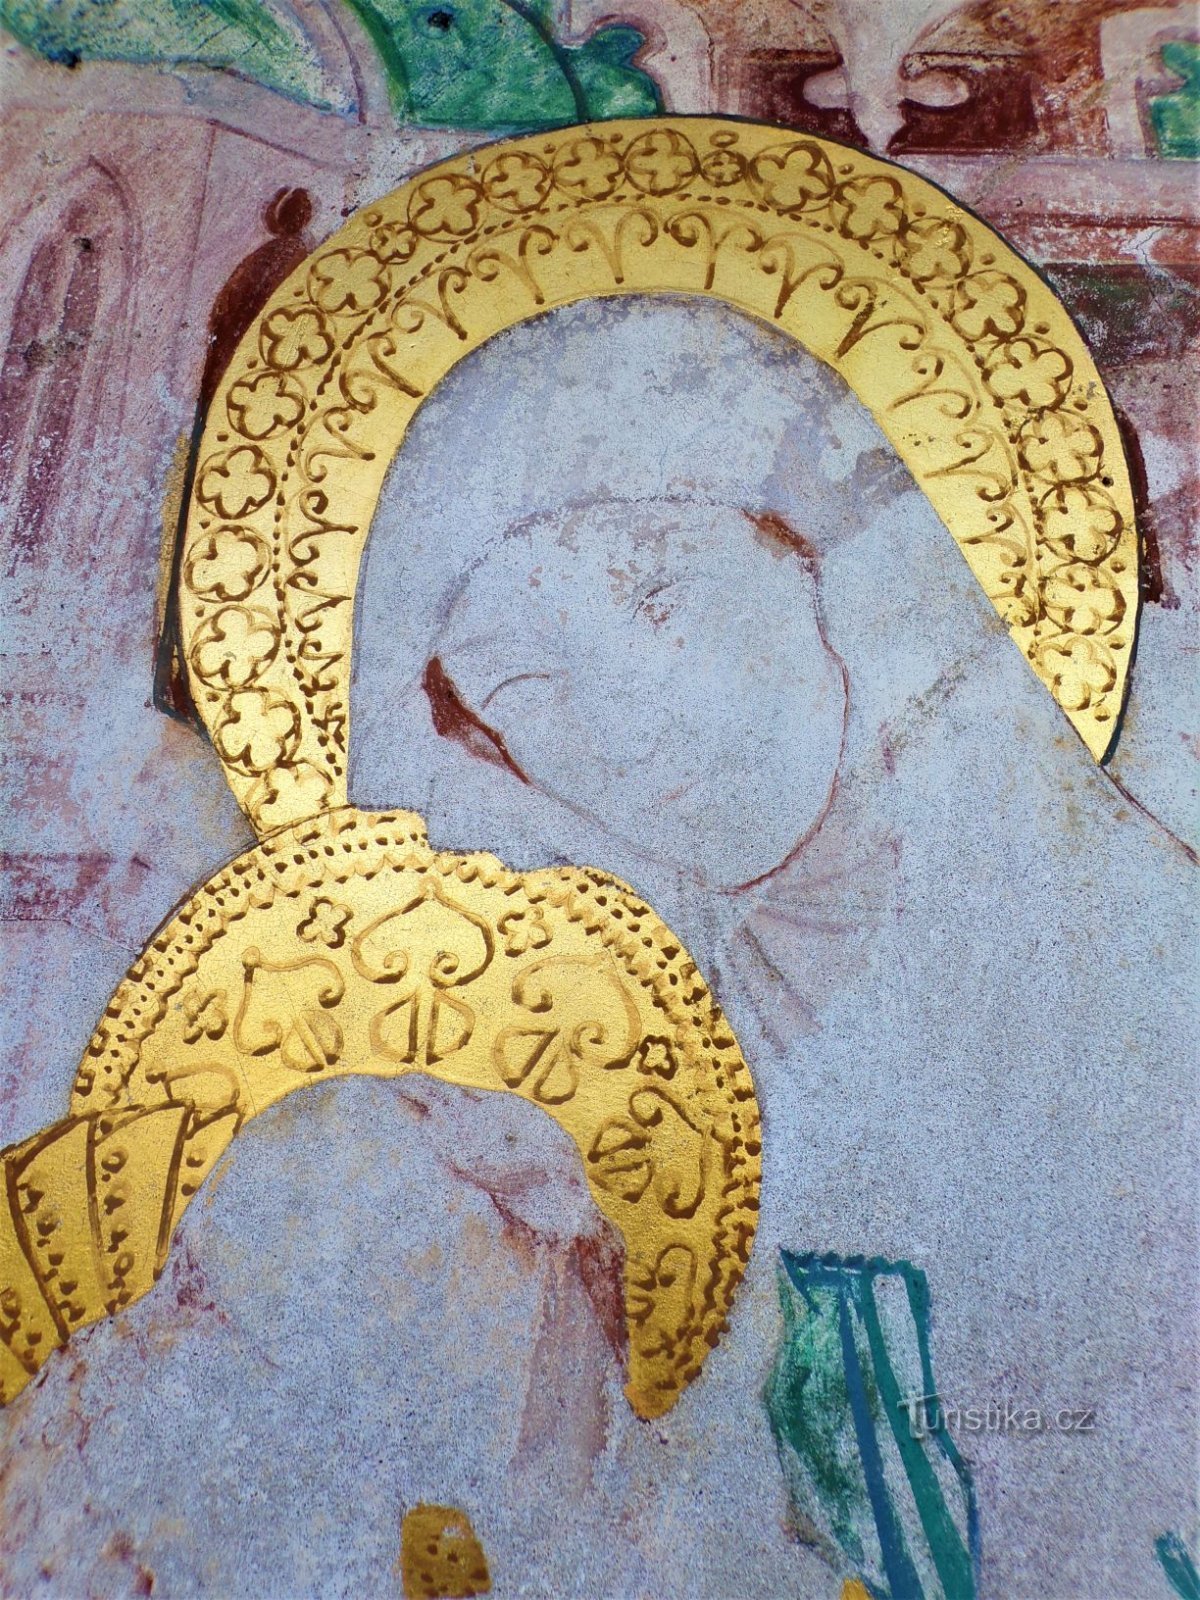 Detaliul Sf. Anne în pictura din capela Sf. Anny (Dobřenice, 8.5.2021 mai XNUMX)